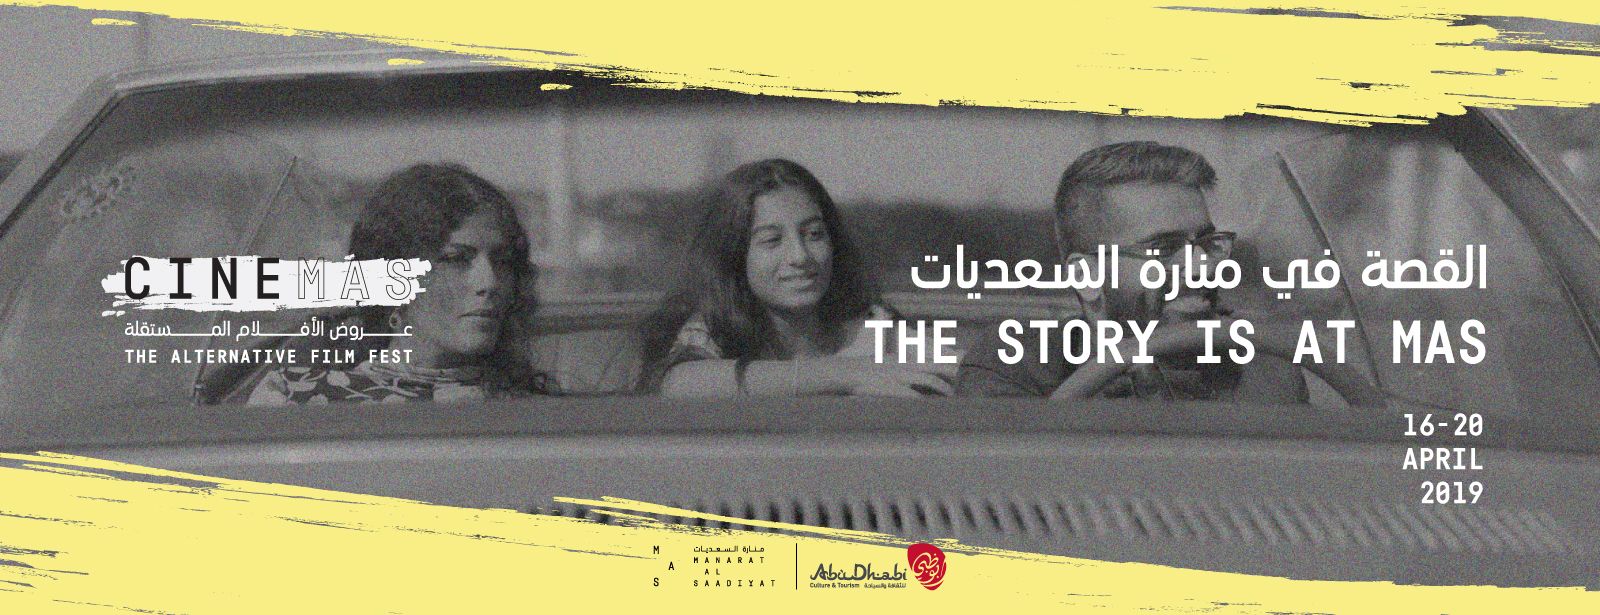 CineMAS: The Alternative Film Fest 2019 - Coming Soon in UAE